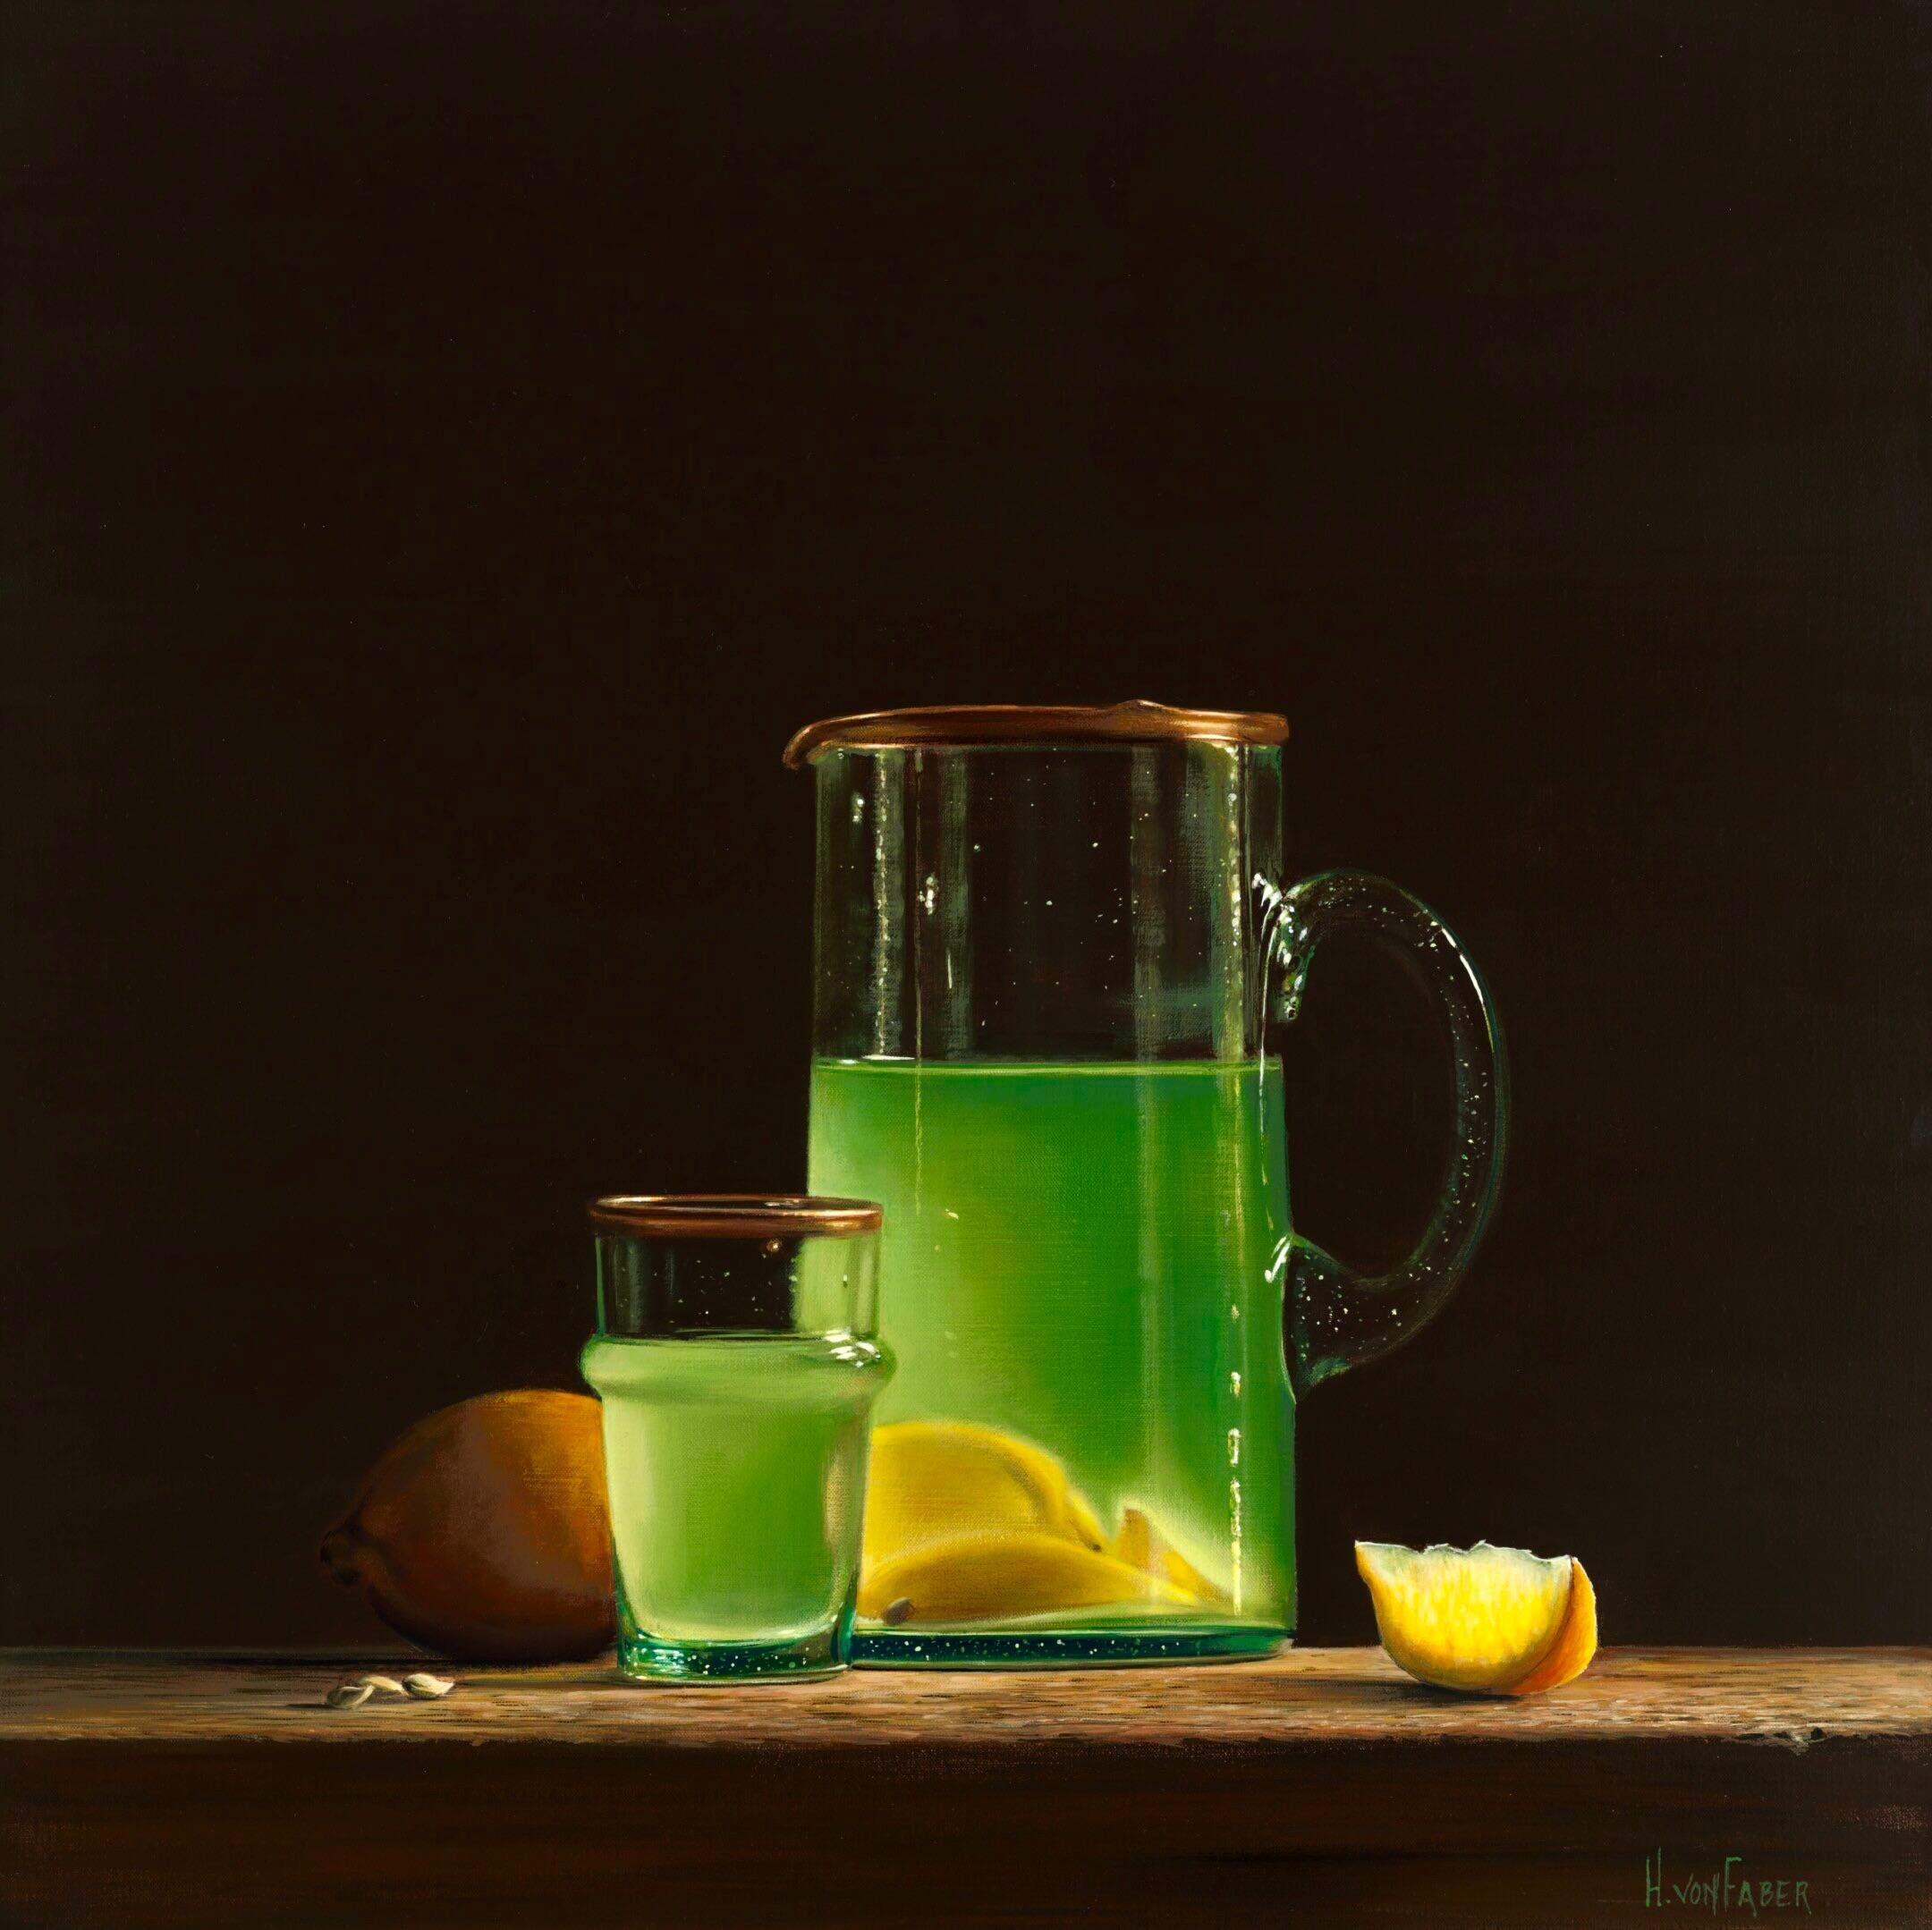 Still-Life Painting Heidi von Faber - Limonade - Nature morte hollandaise du 21e siècle de limonade  & Citrons